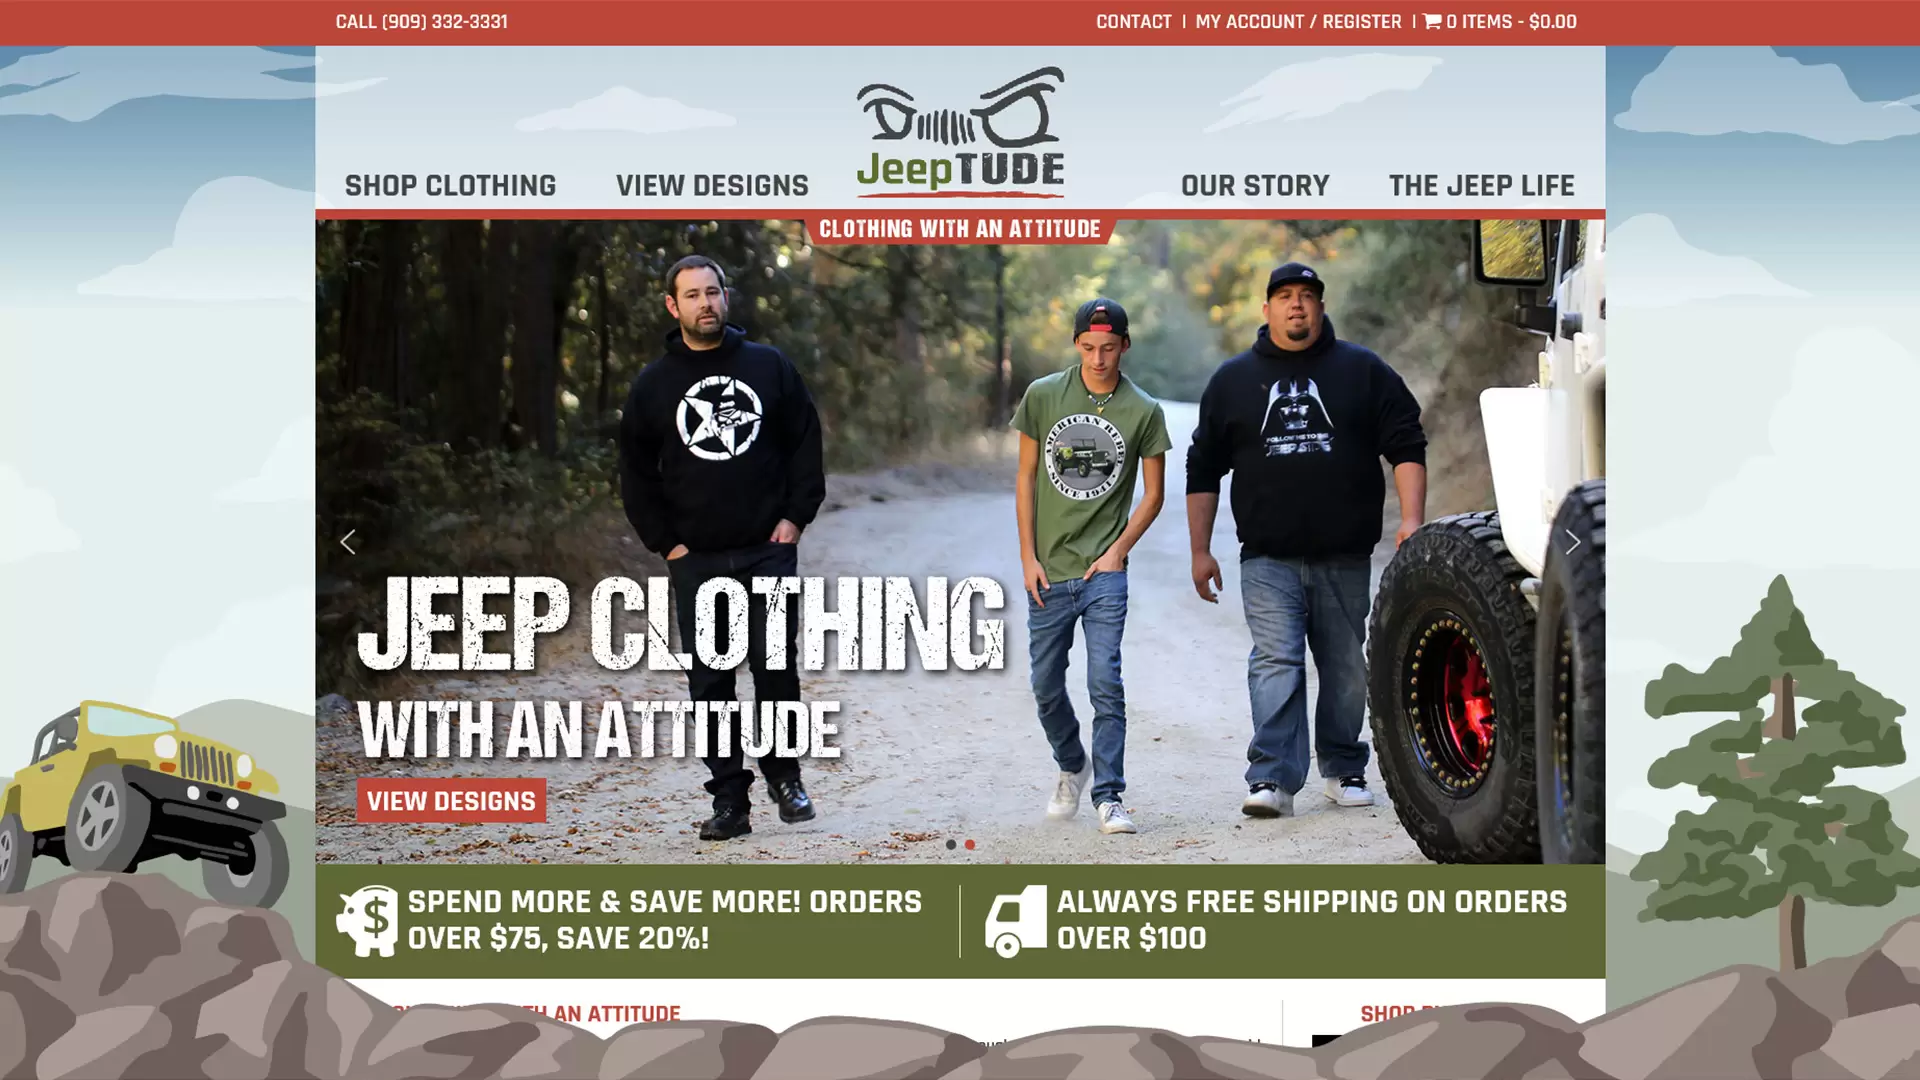 Smart Web Creative - E-Commerce Clothing Company Website